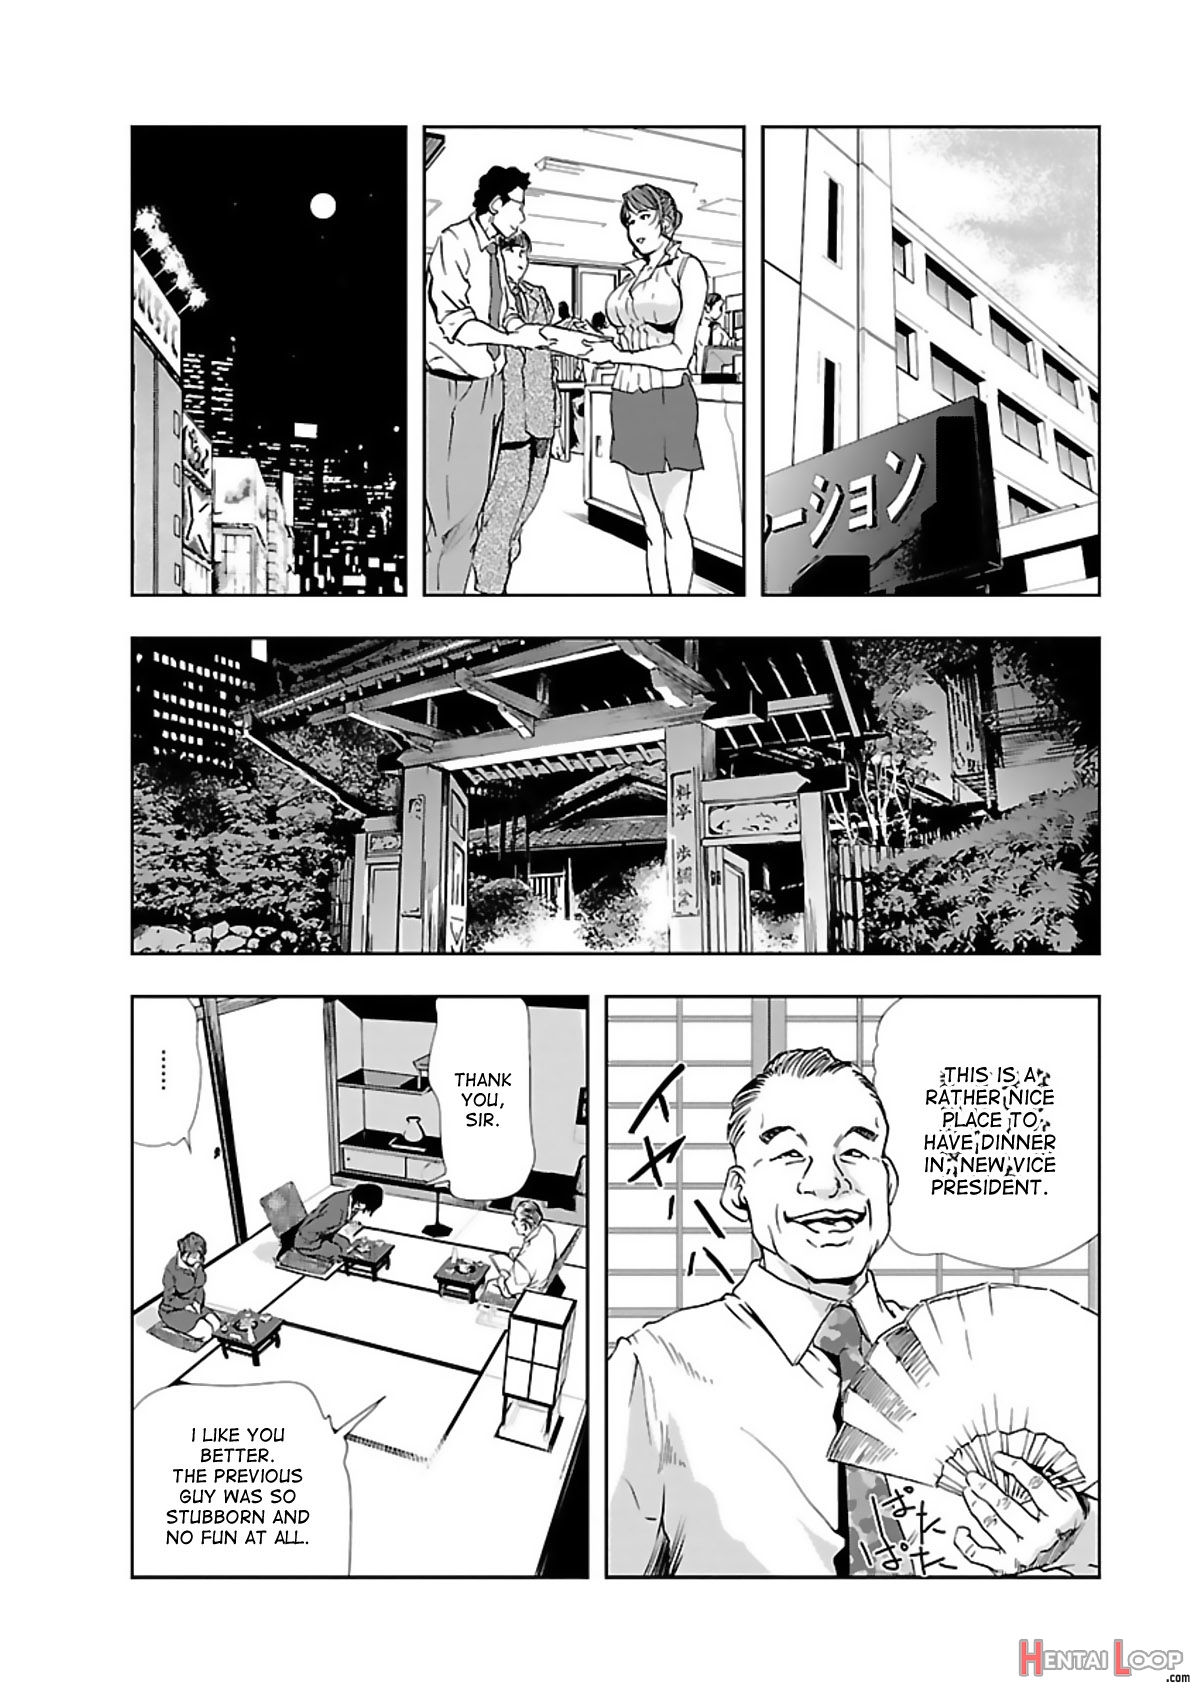 Nikuhisyo Yukiko Volume I Ch. 1-6 page 56